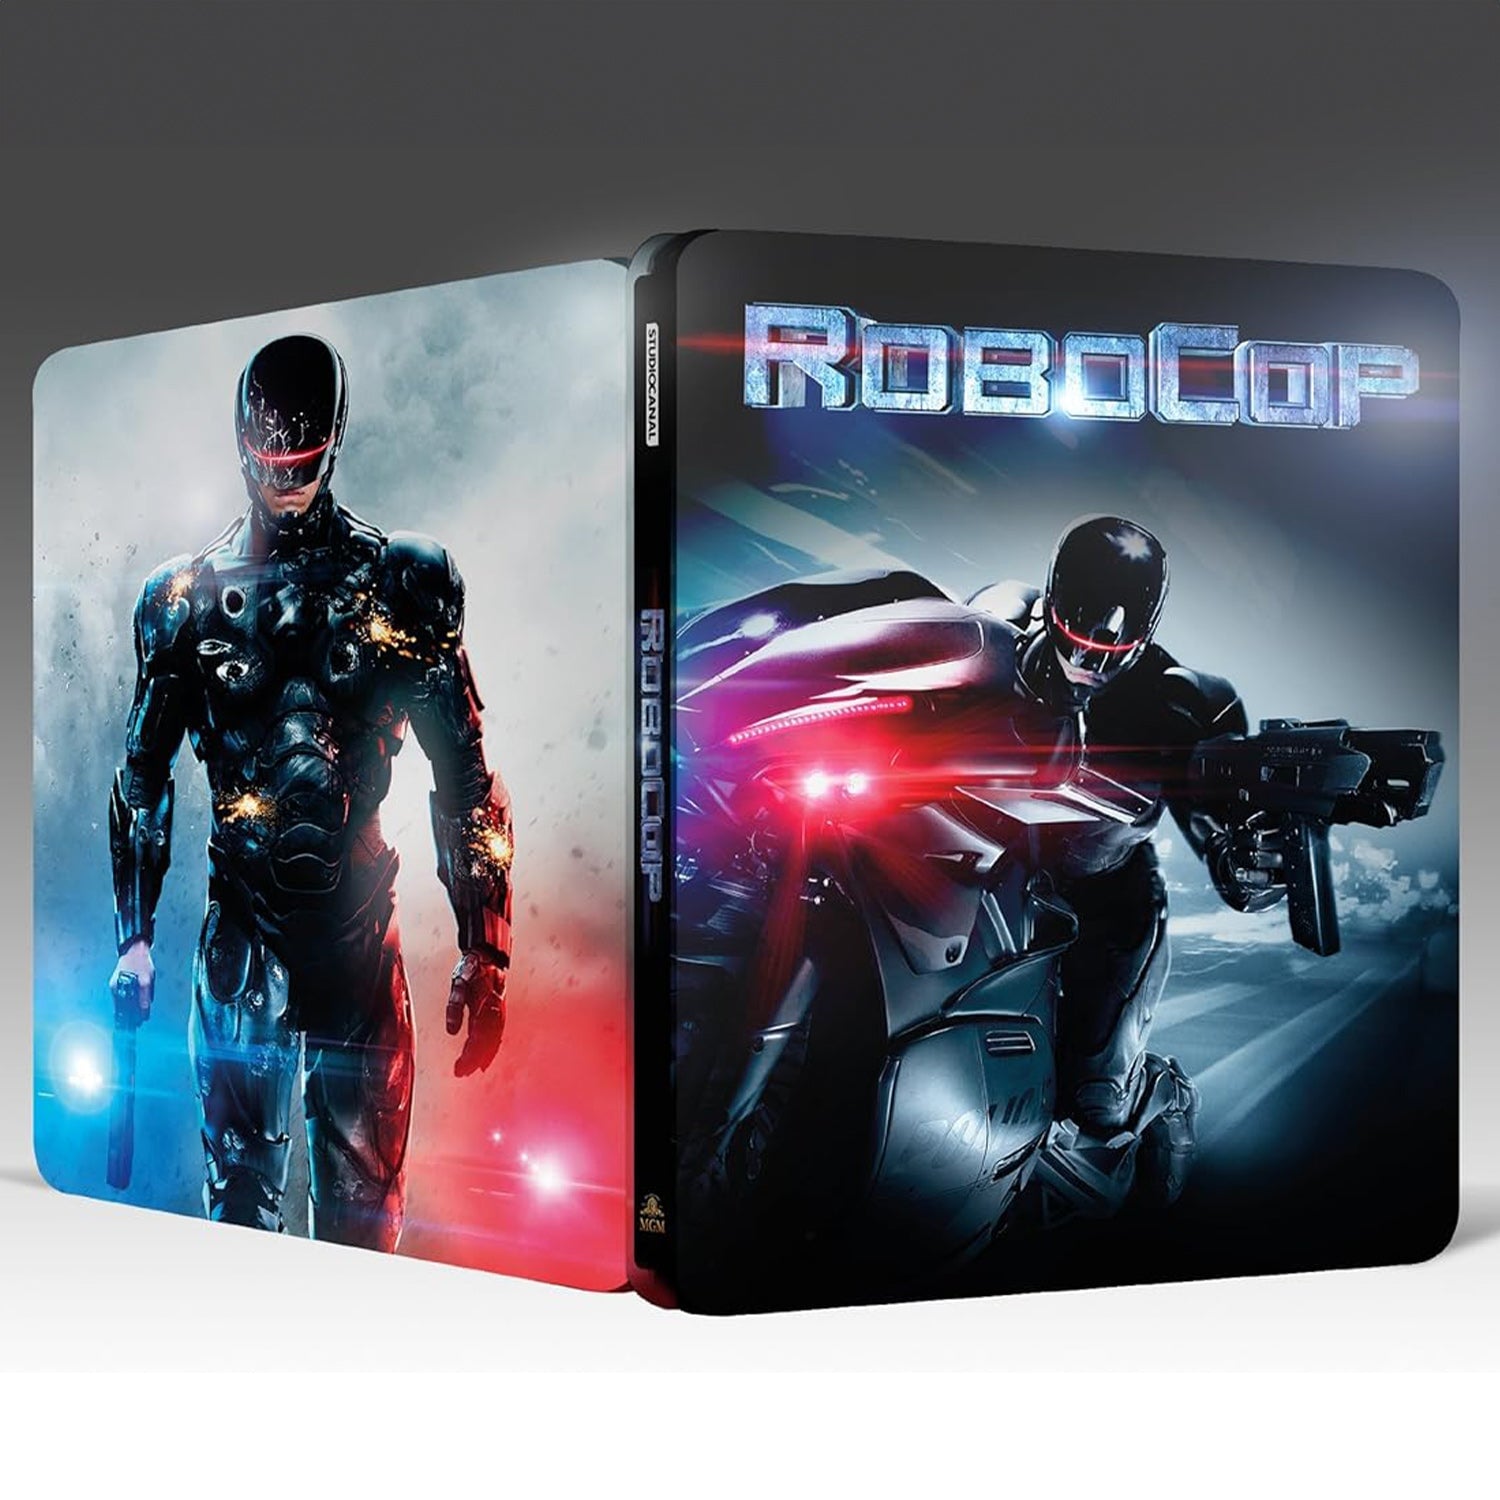 РобоКоп (2014) (Blu-ray) Steelbook